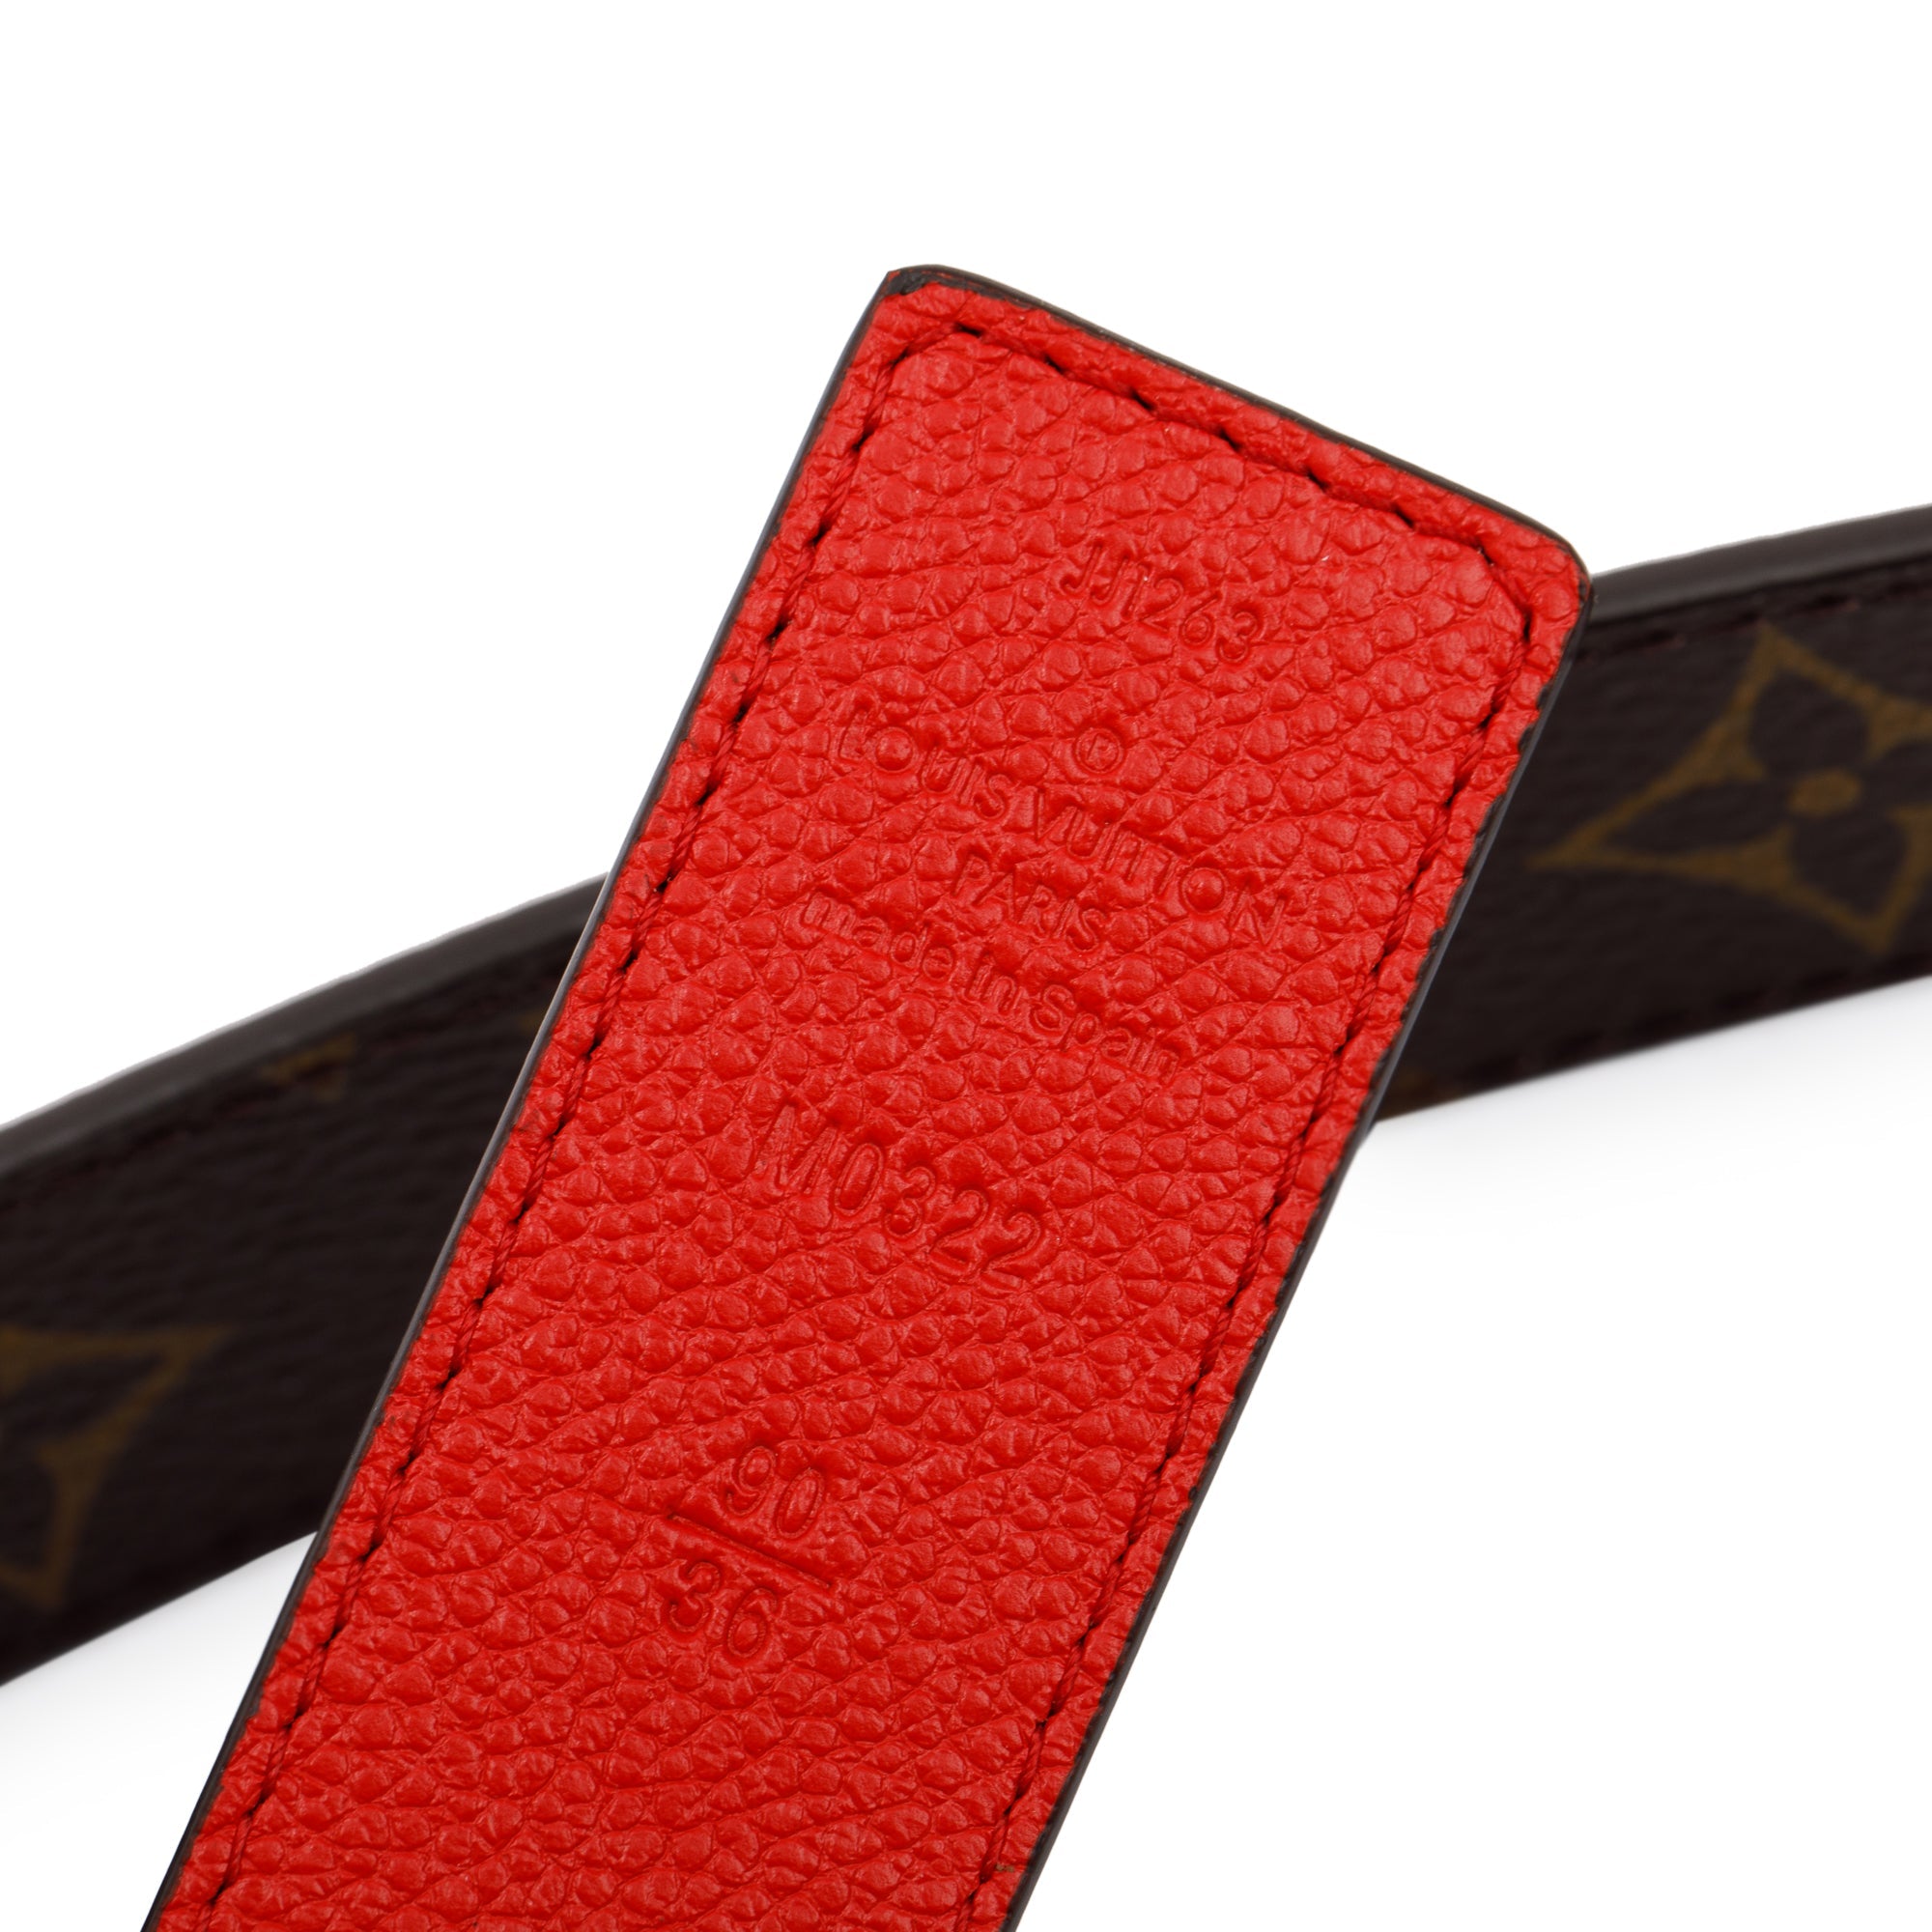 Louis Vuitton® Pretty LV 30MM Reversible Belt Beige. Size 85 Cm in 2023